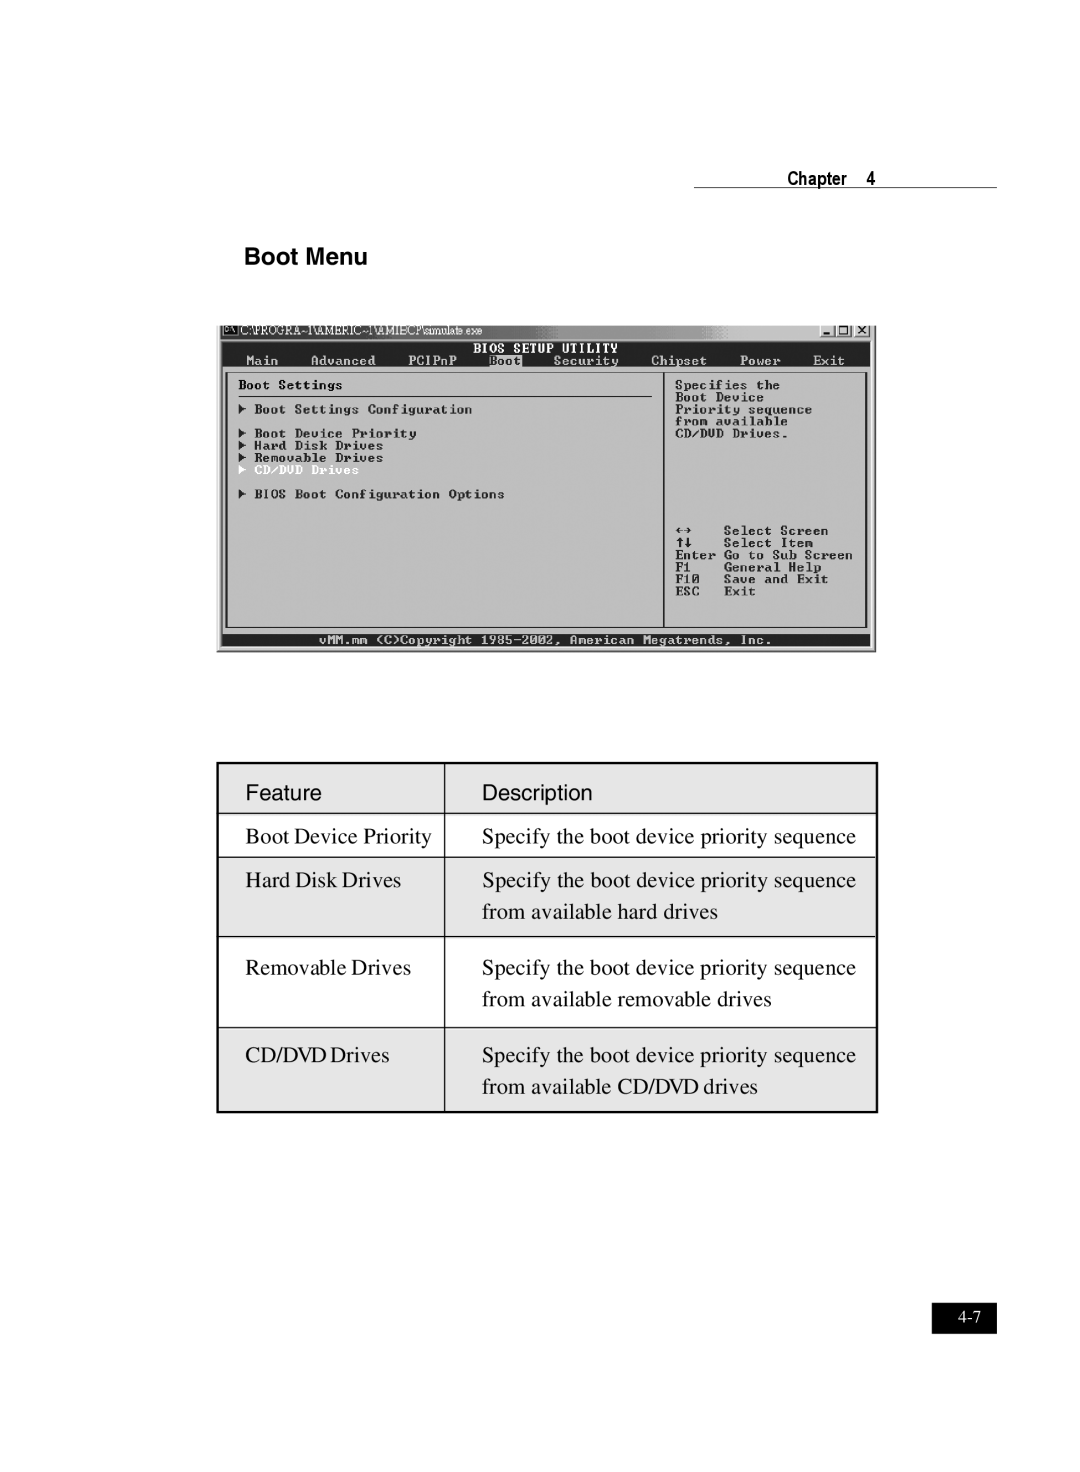 IBM DJ800 user manual Boot Menu, Feature, Description 